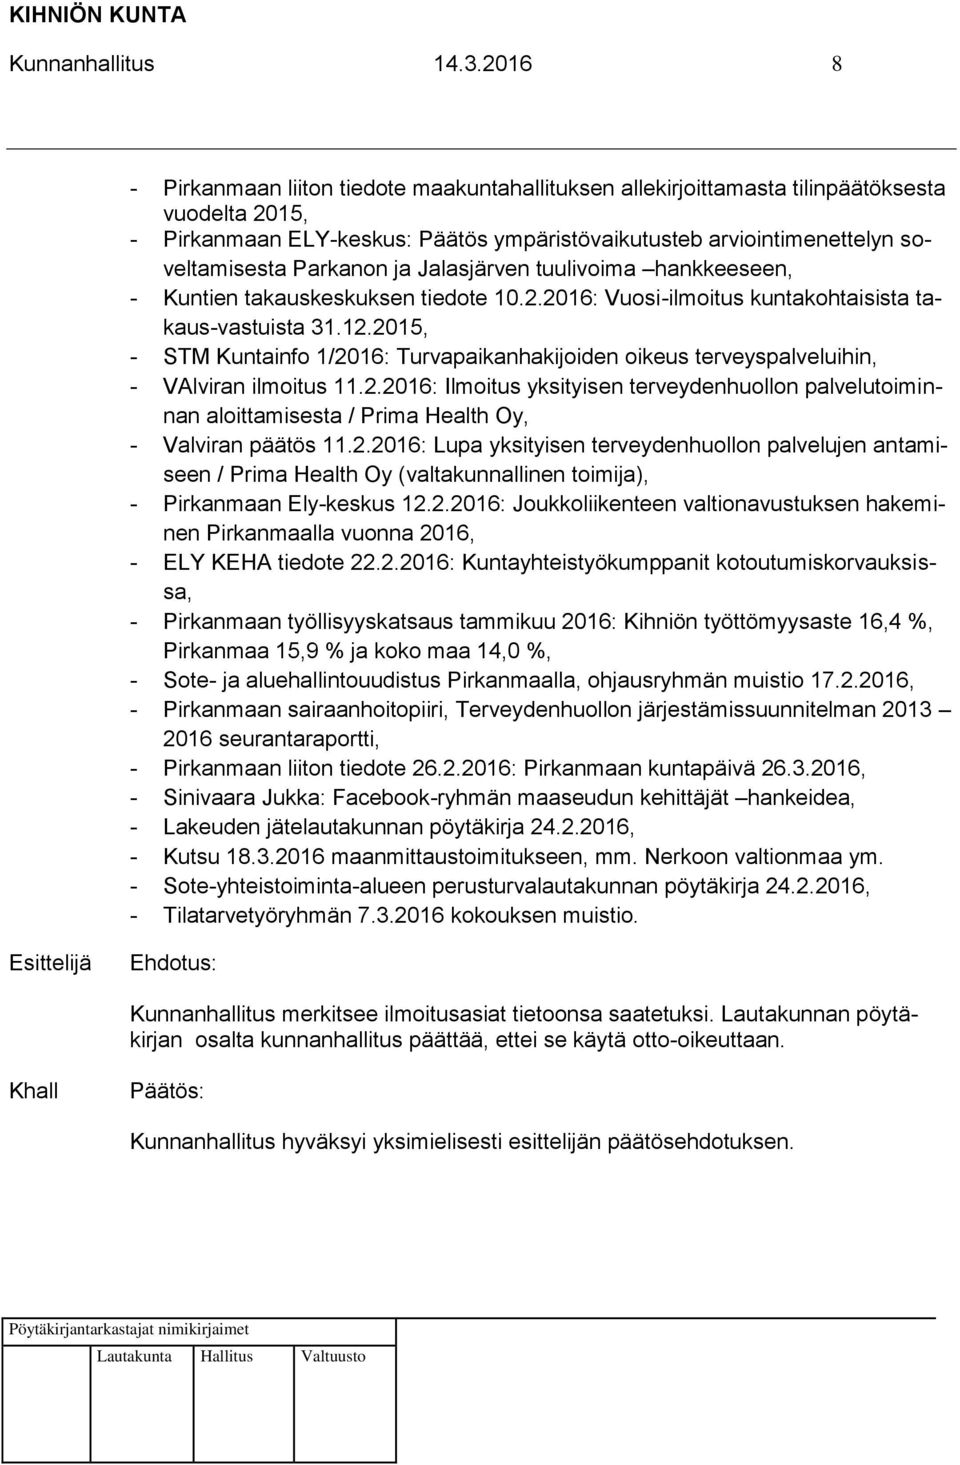 Parkanon ja Jalasjärven tuulivoima hankkeeseen, - Kuntien takauskeskuksen tiedote 10.2.2016: Vuosi-ilmoitus kuntakohtaisista takaus-vastuista 31.12.